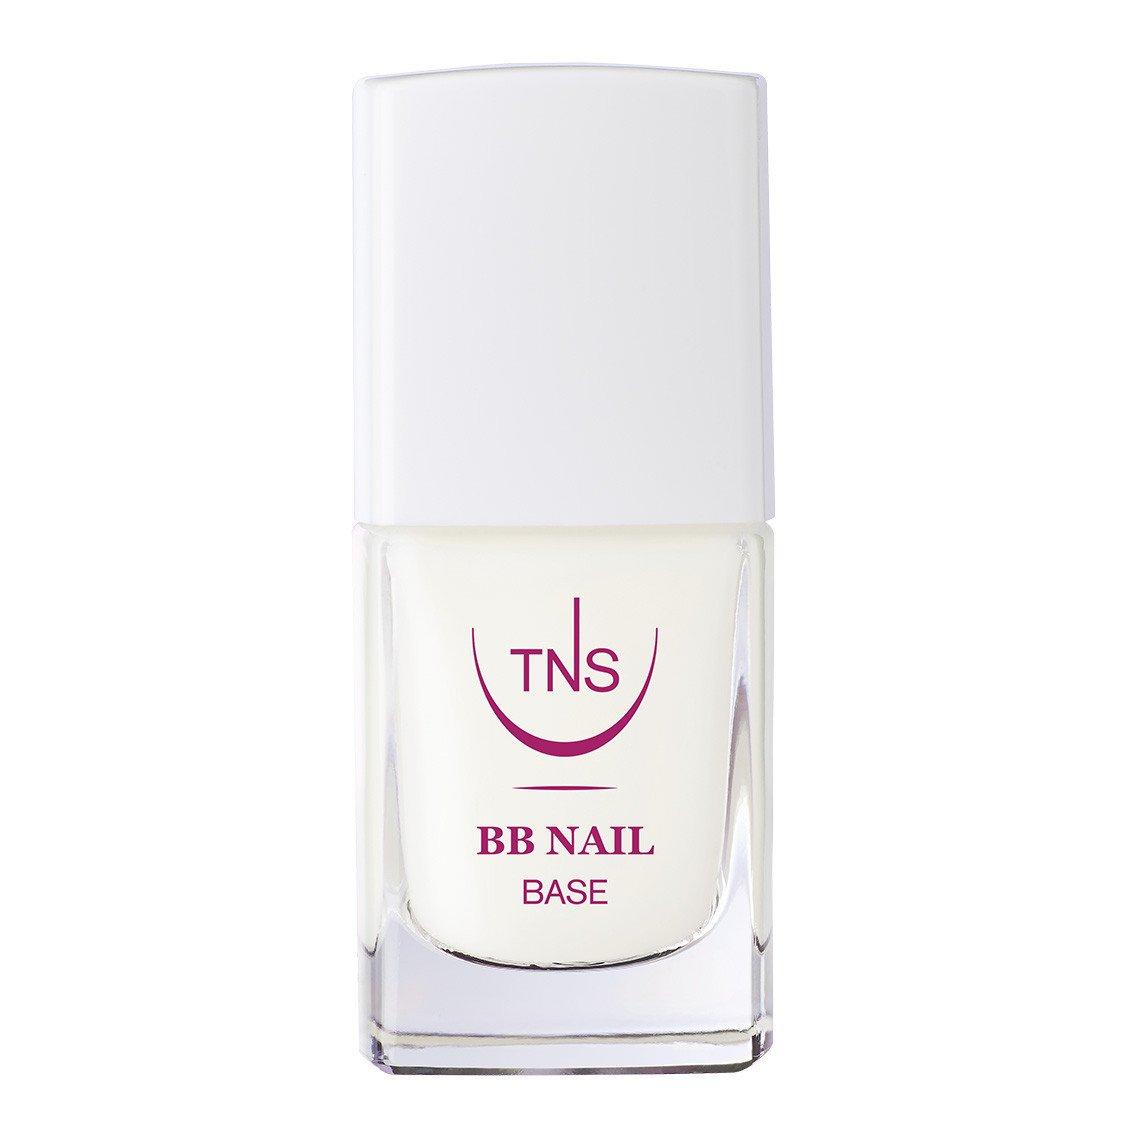 Bb Nail Weiss Damen Transparent 10ml von TNS Cosmetics